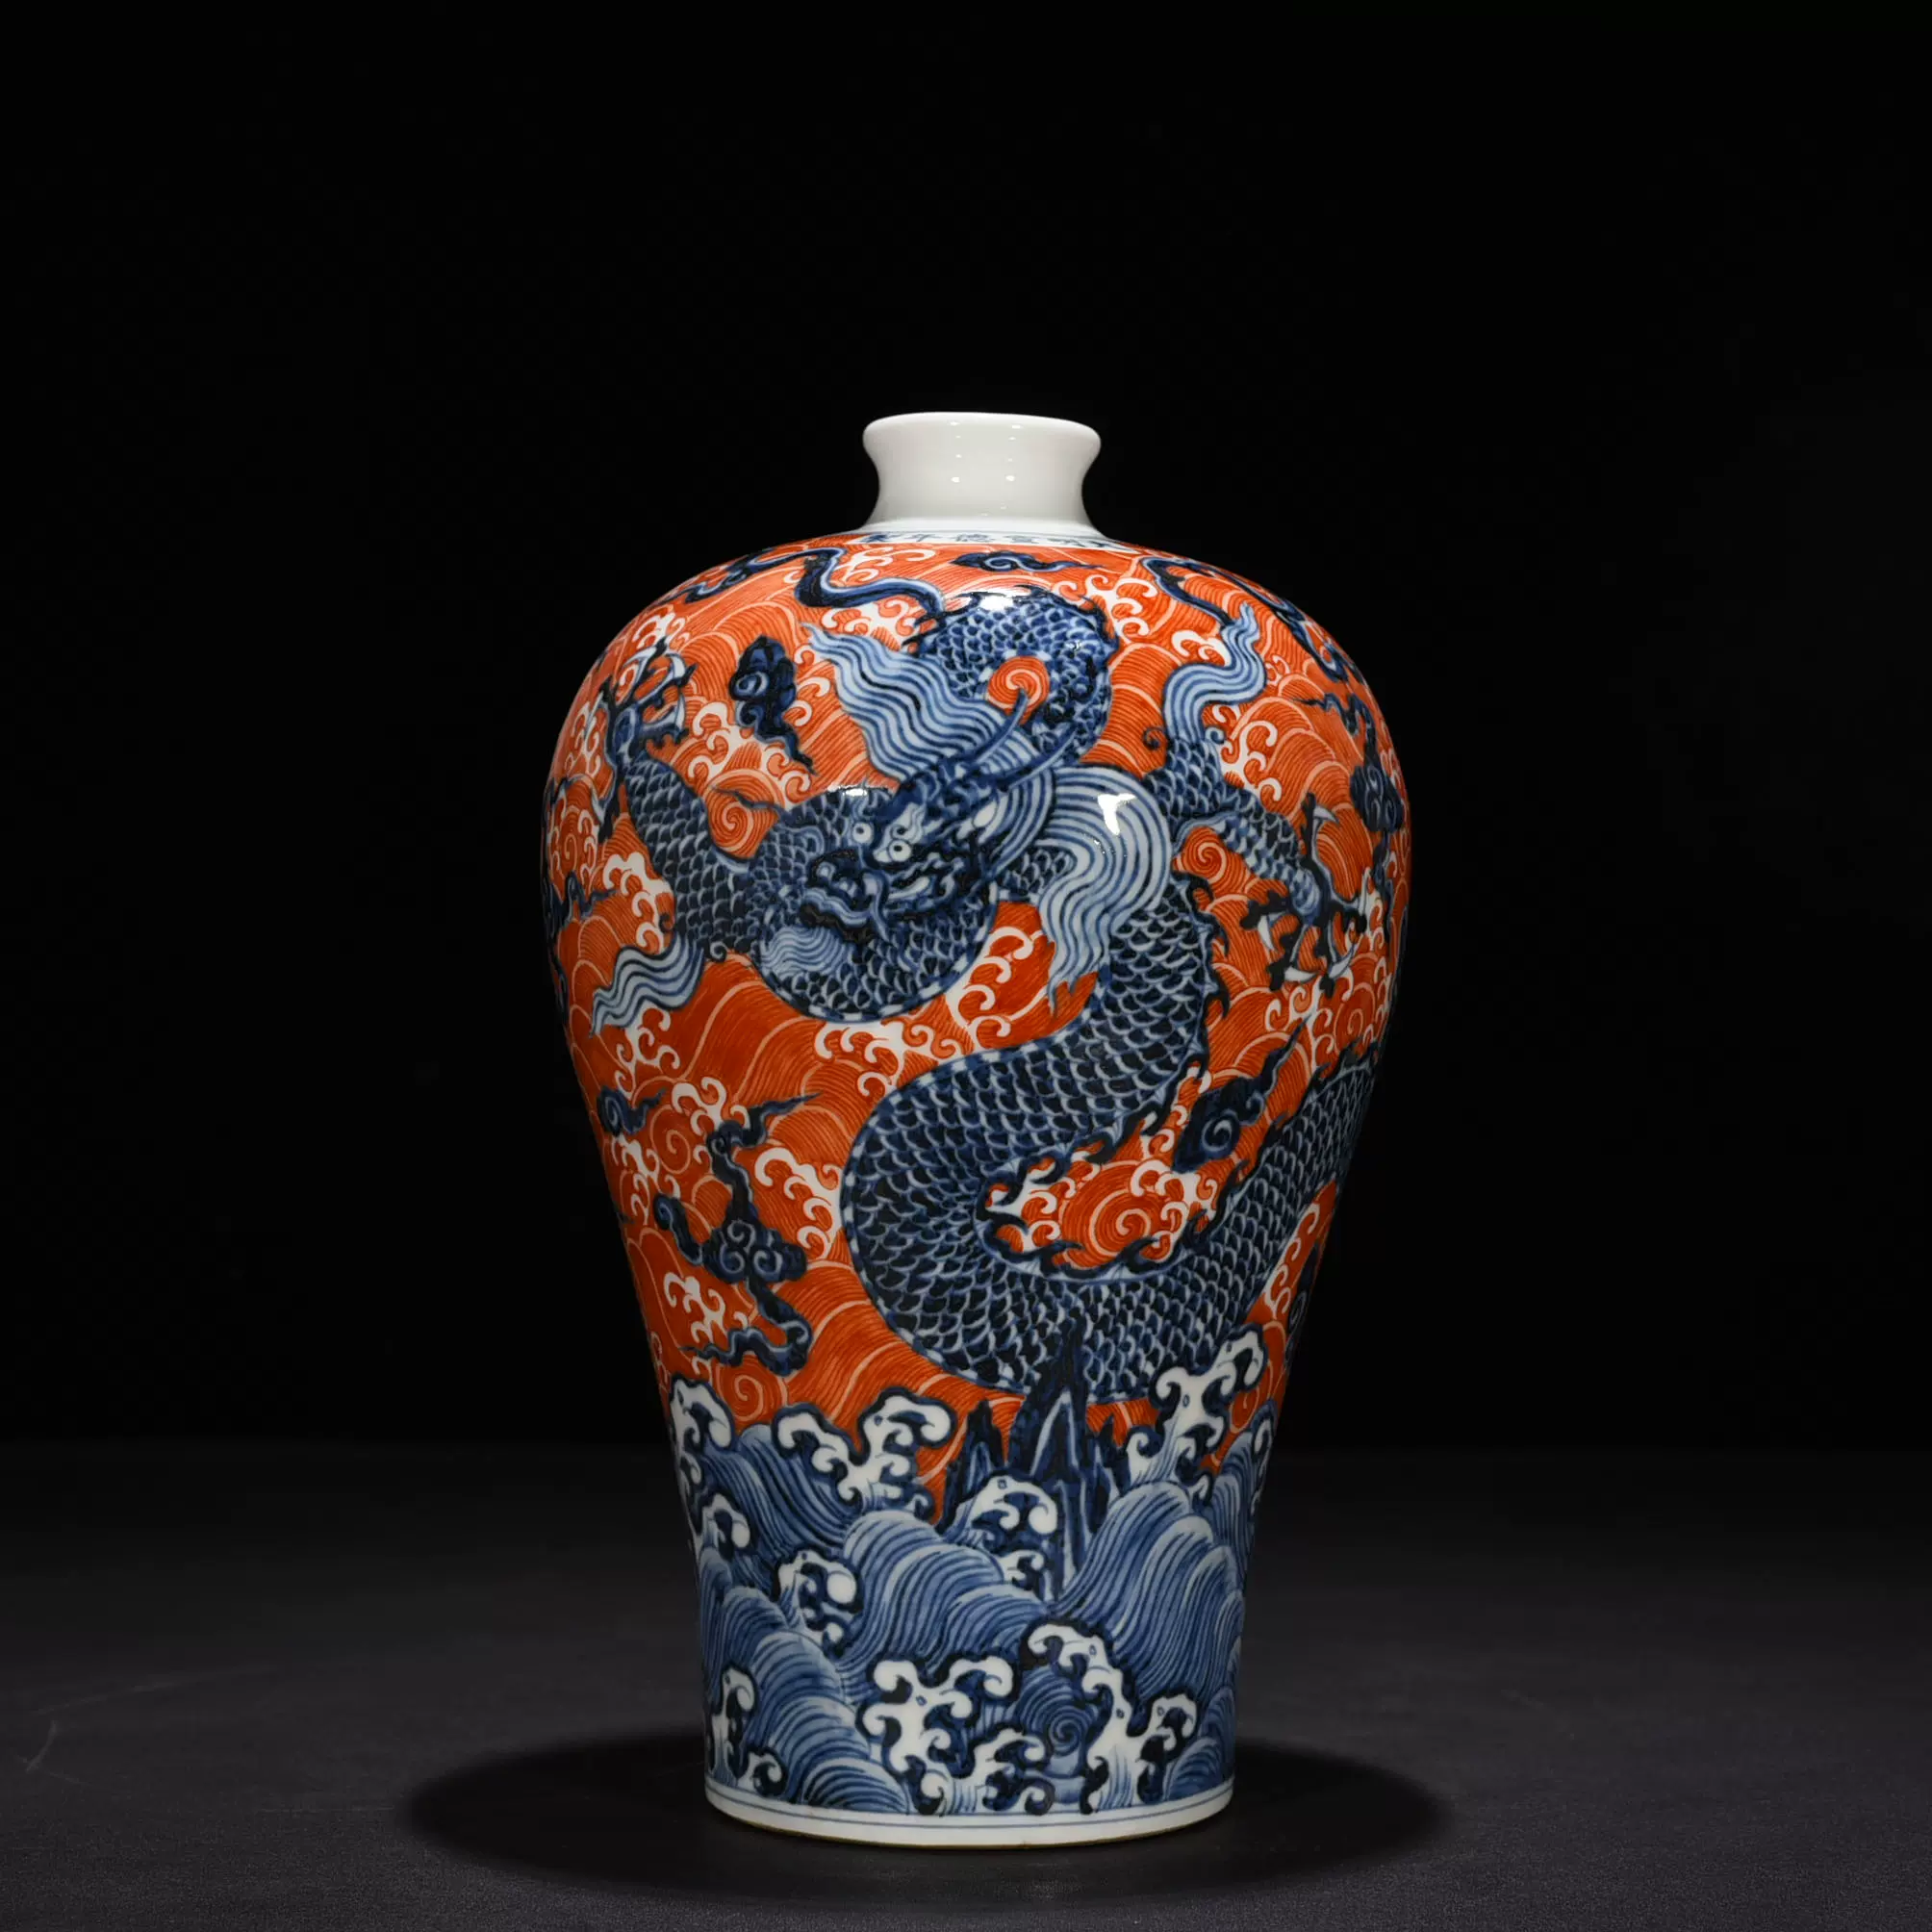 明永乐黄釉刻螭龙纹梅瓶古玩古董古瓷器旧货收藏-Taobao